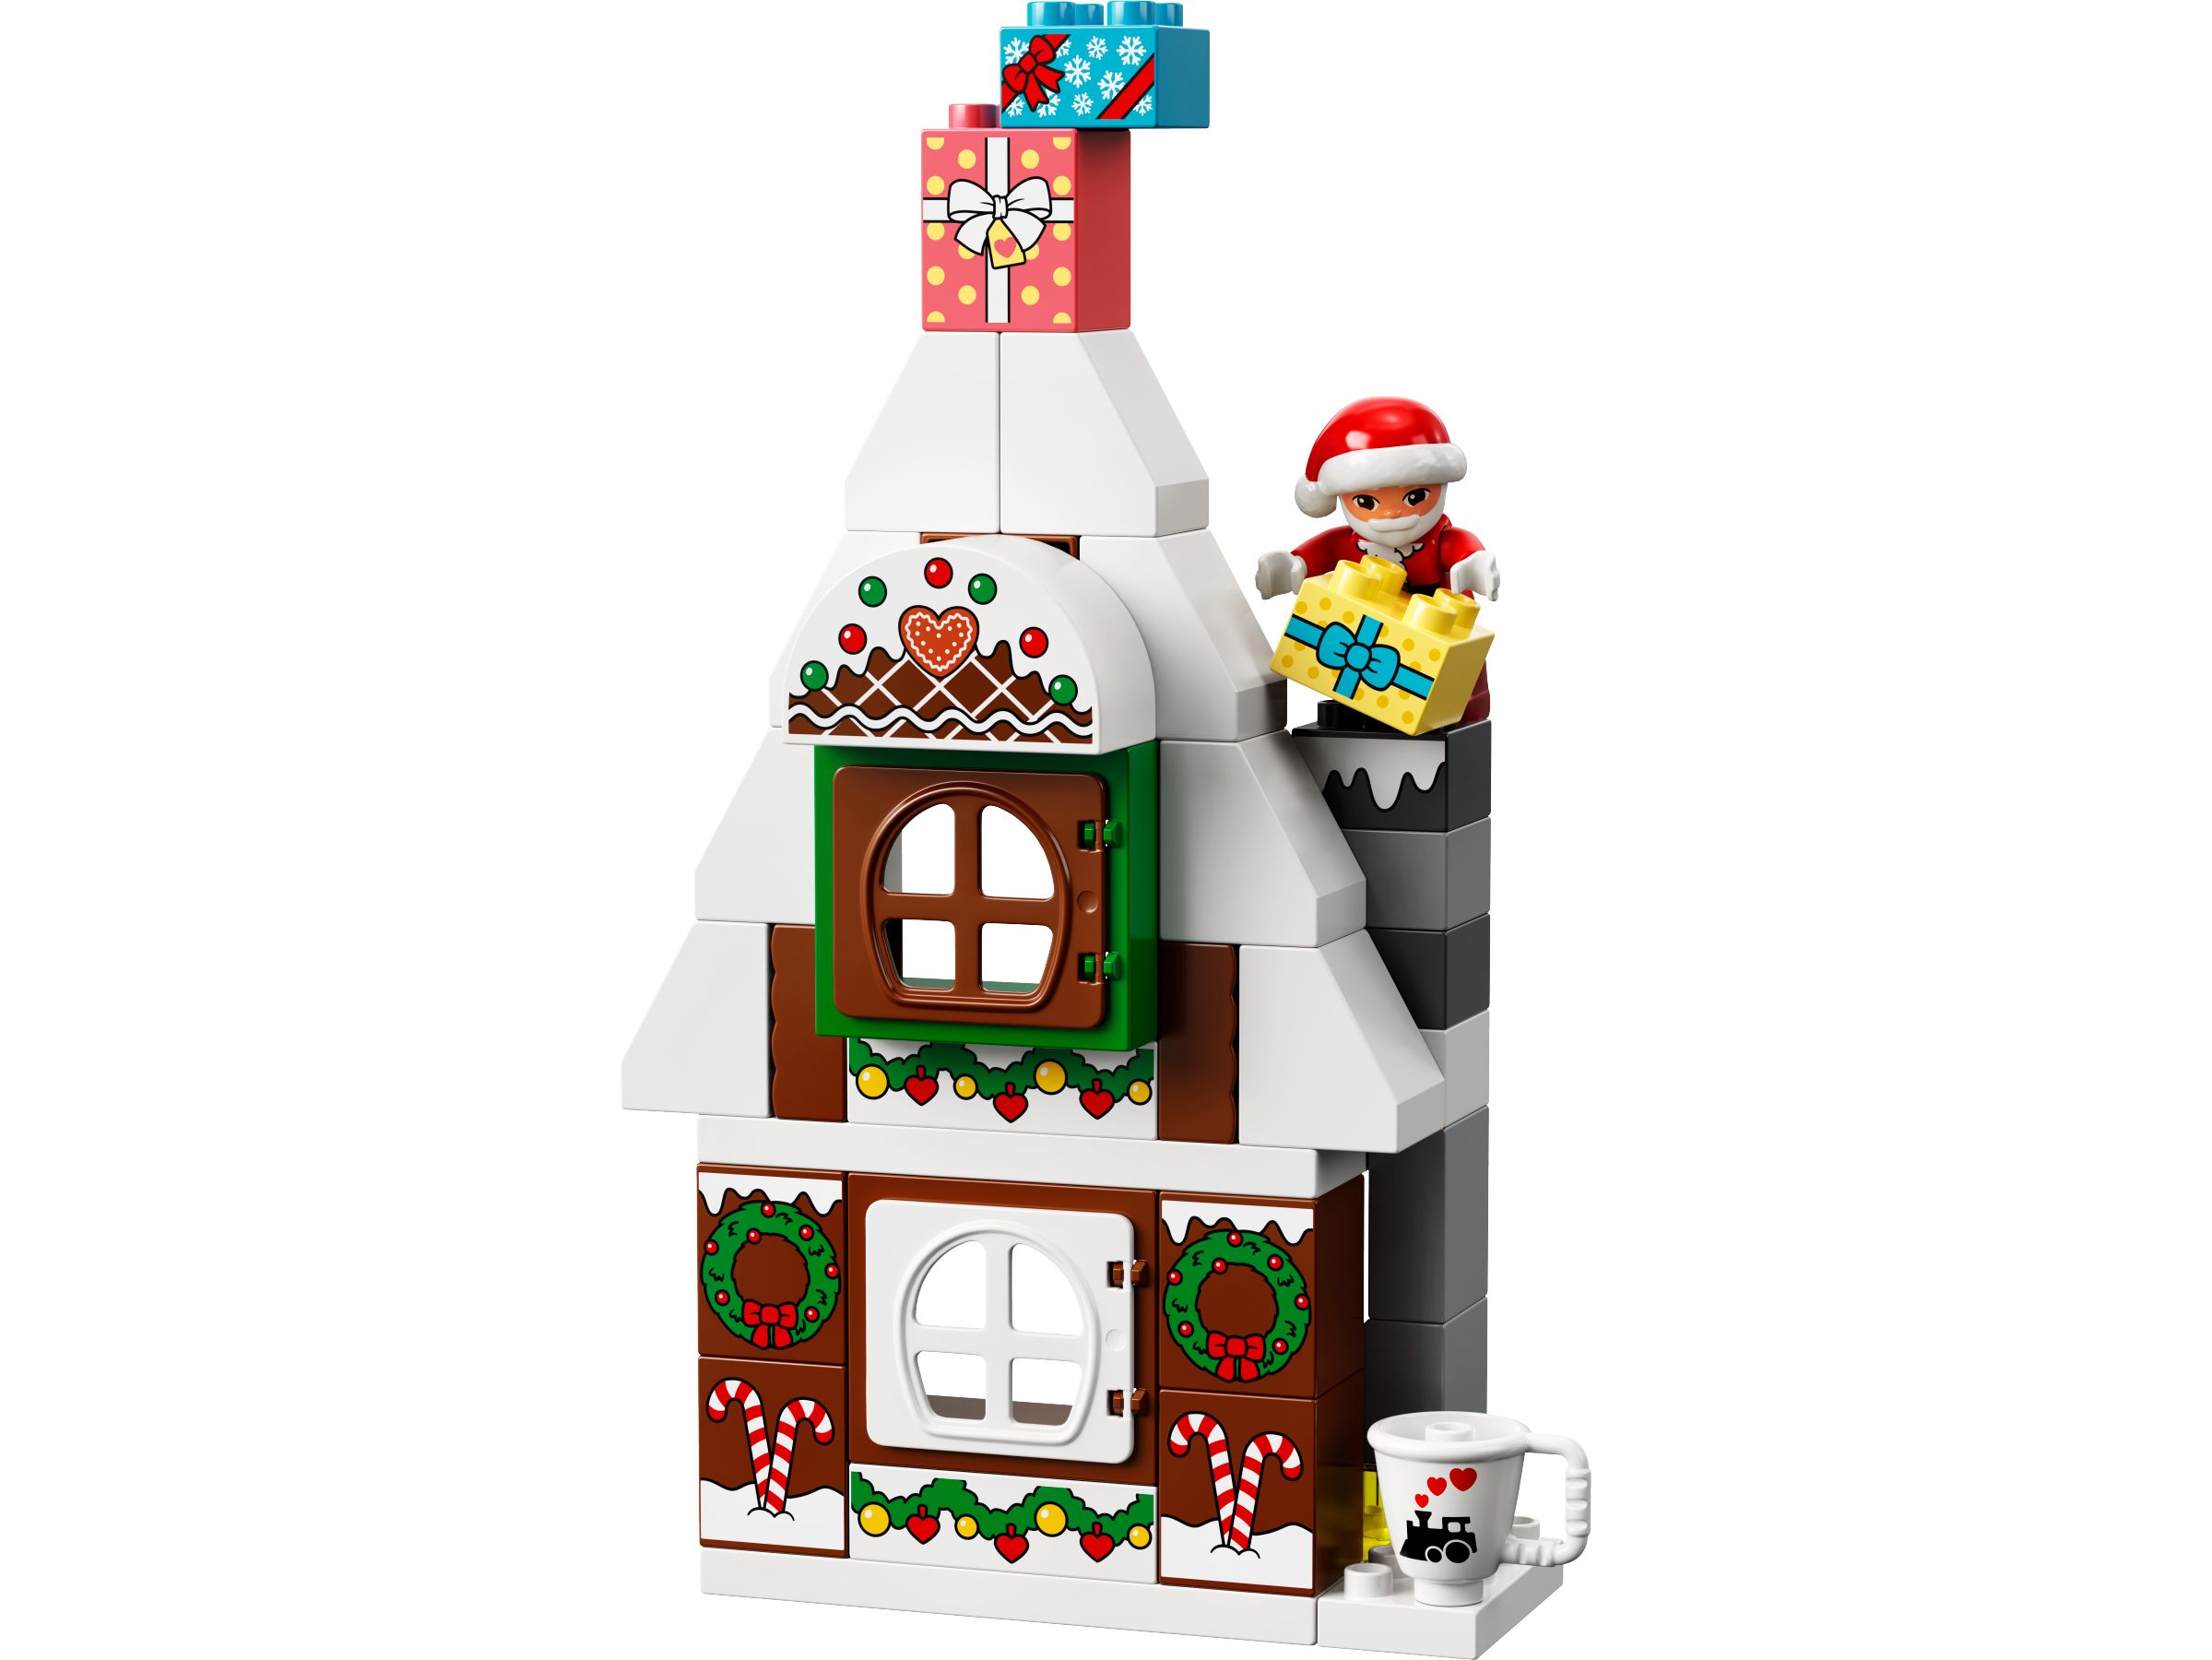 LEGO Duplo 10976 Lebkuchenhaus mit Weihnachtsmann LEGO_10976_alt3.jpg